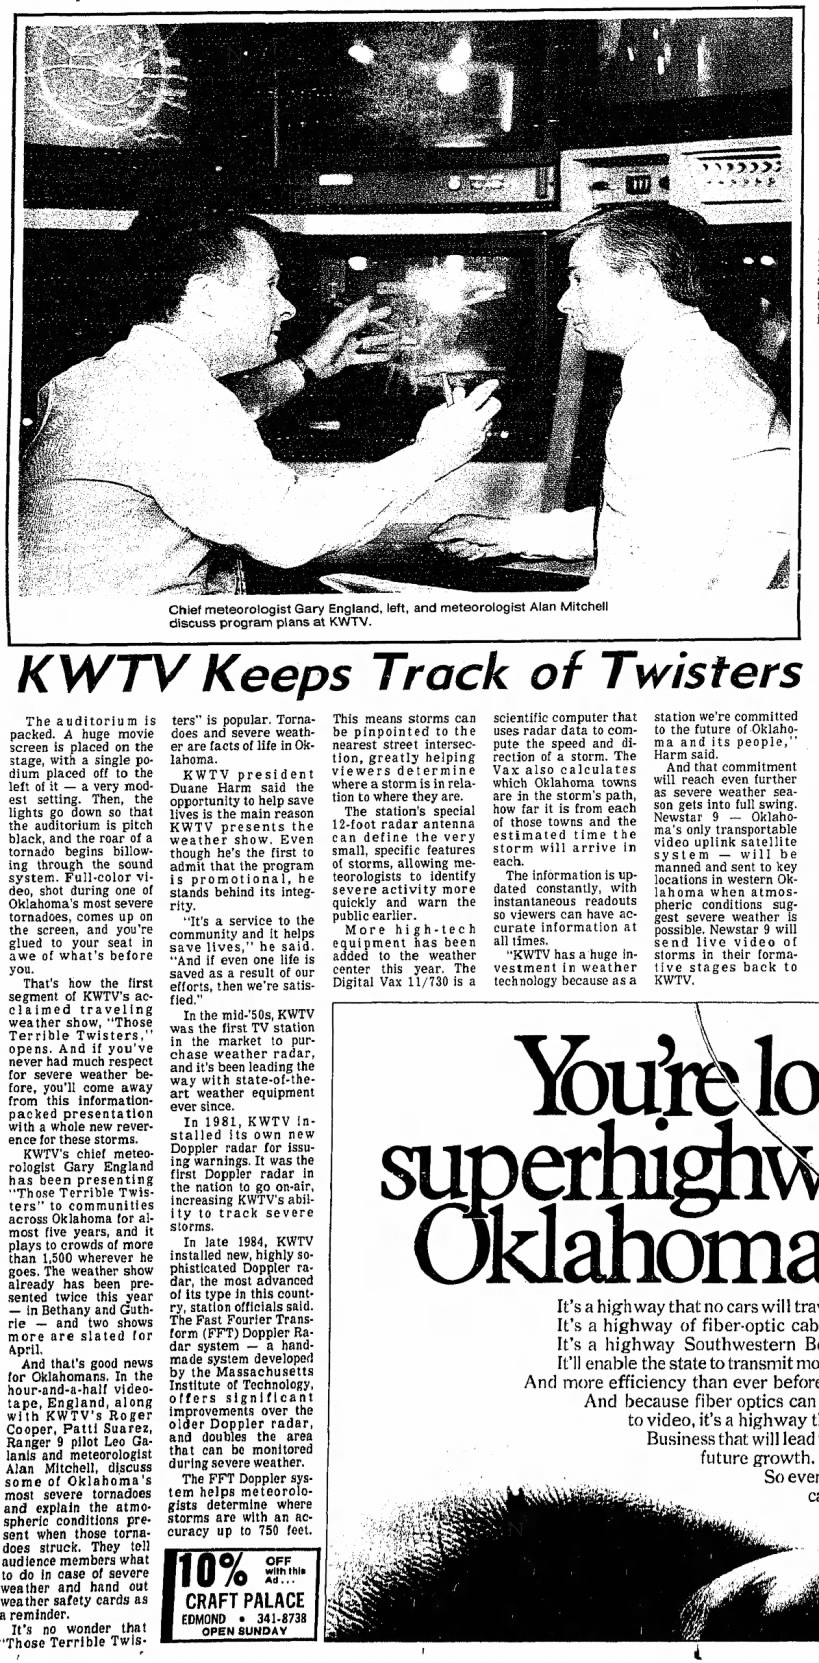 KWTV Keeps Track of Twisters